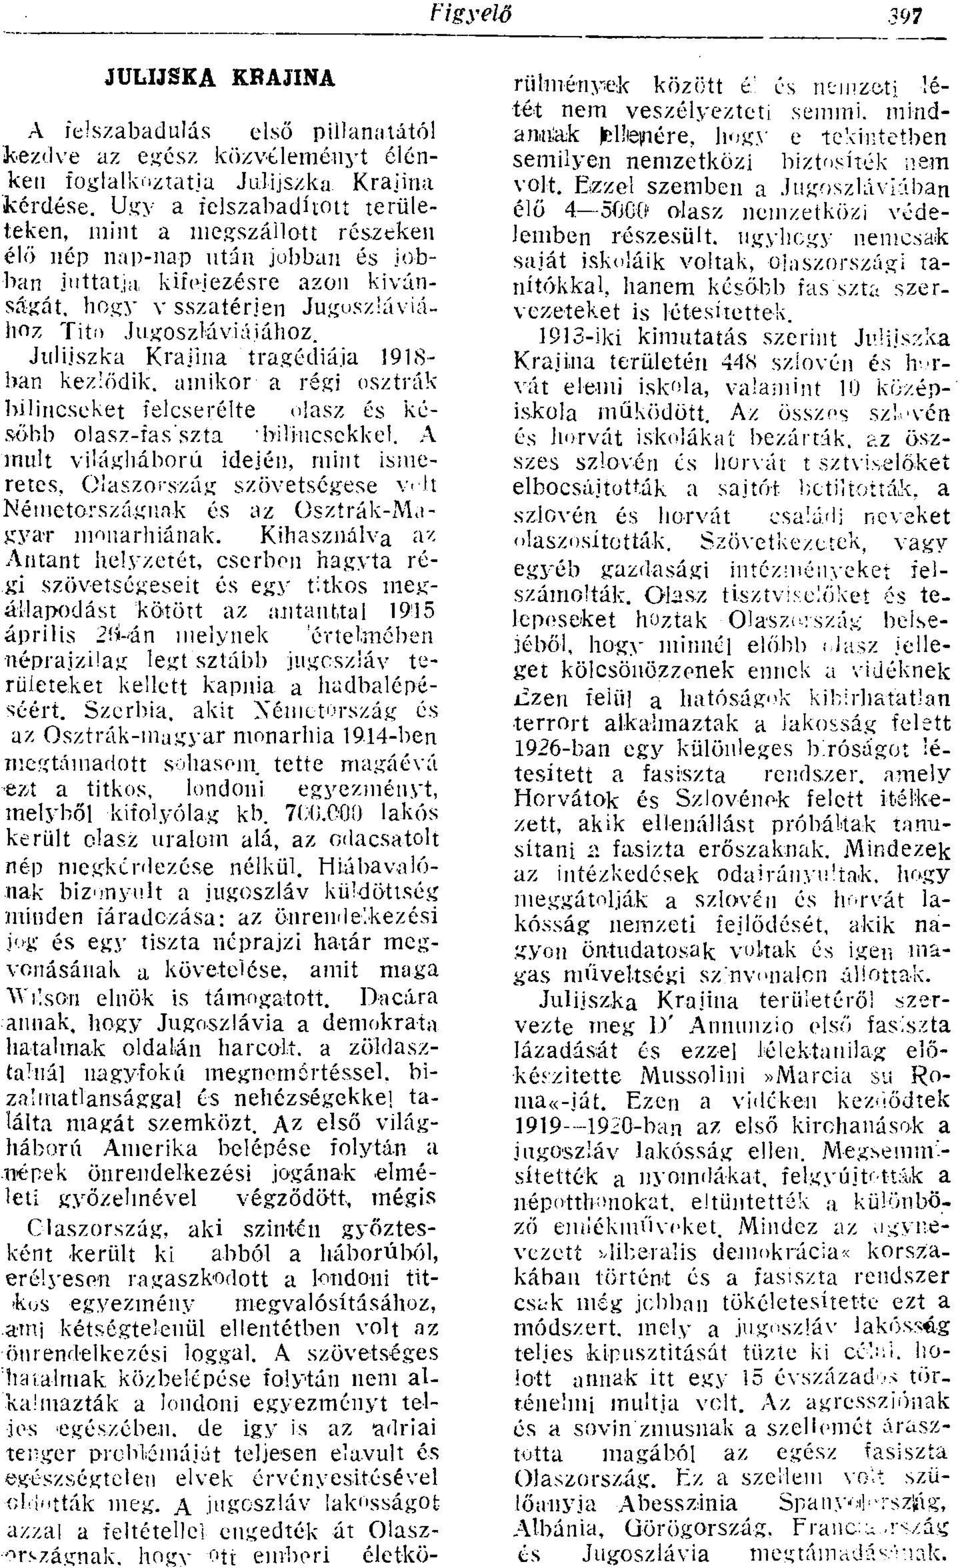 Julijszka Krajina tragédiája 1918- ban kezlődik, amikor- a régi osztrák bilincseket felcserélte olasz és később olasz-fas'szta bilincsekkel.